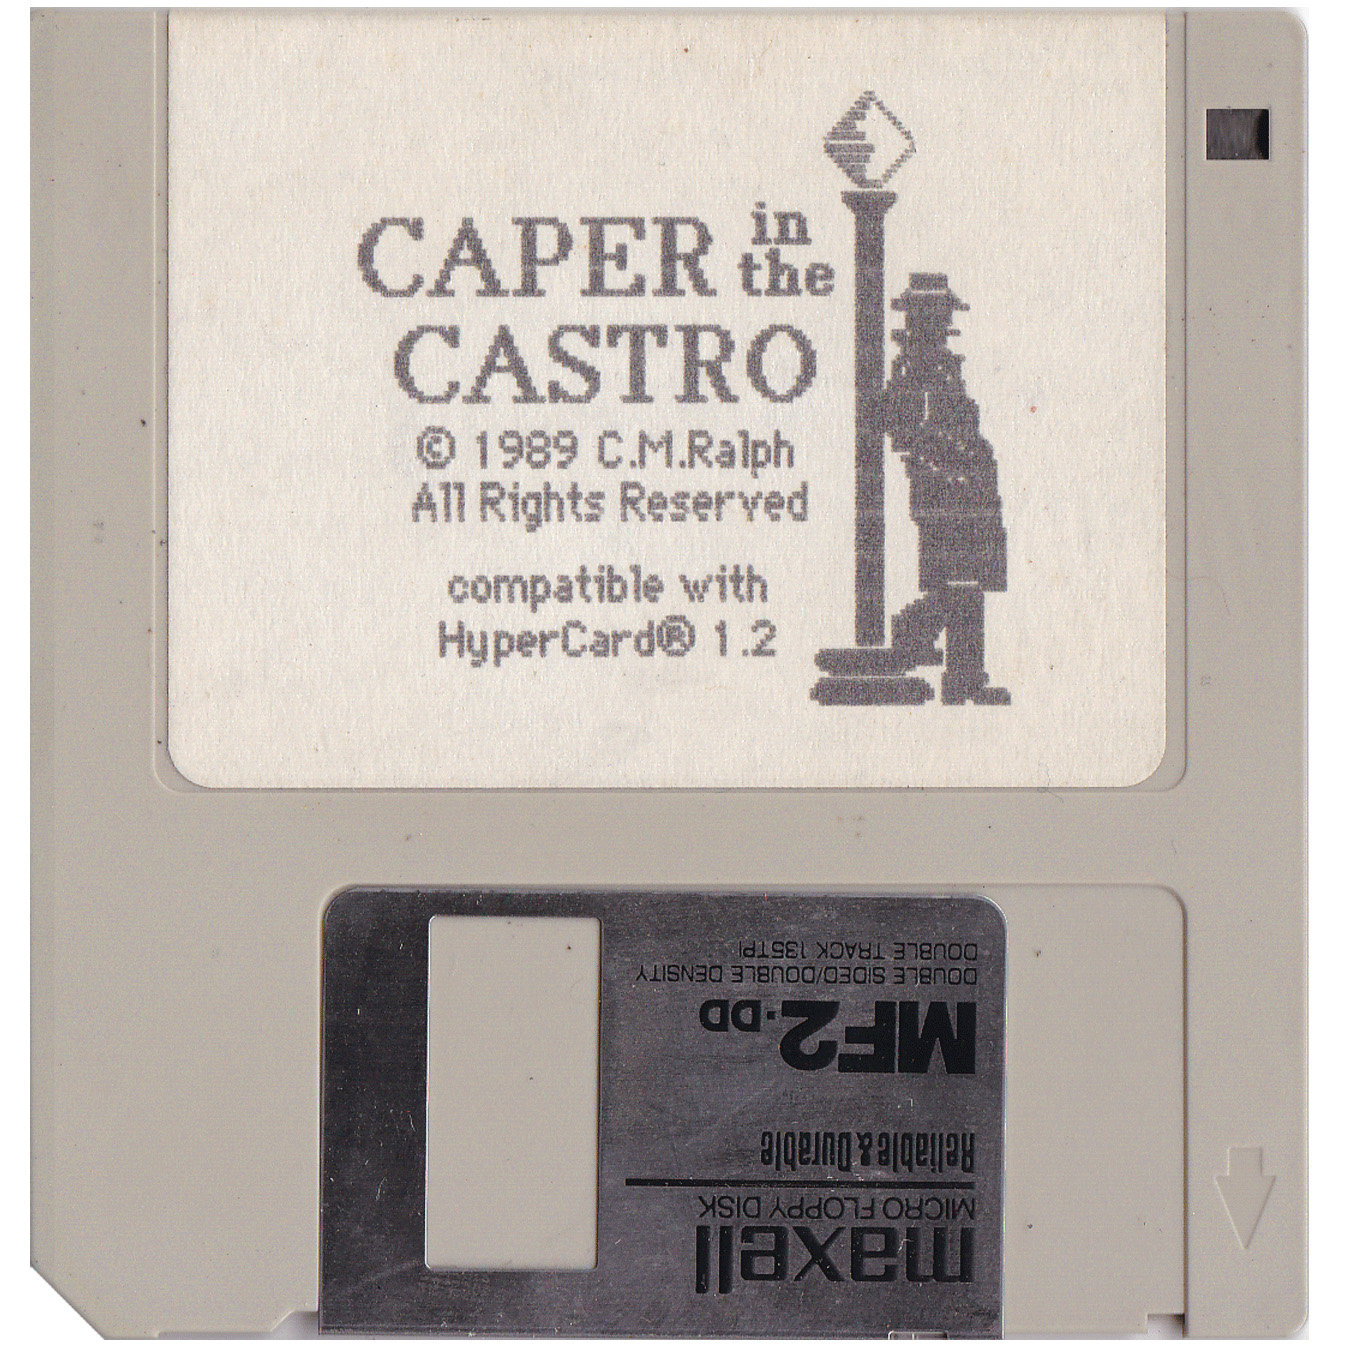 Caper in the Castro (1989): Original Disc. Developer: C.M.Ralph. Source: Private Collection of C.M.Ralph